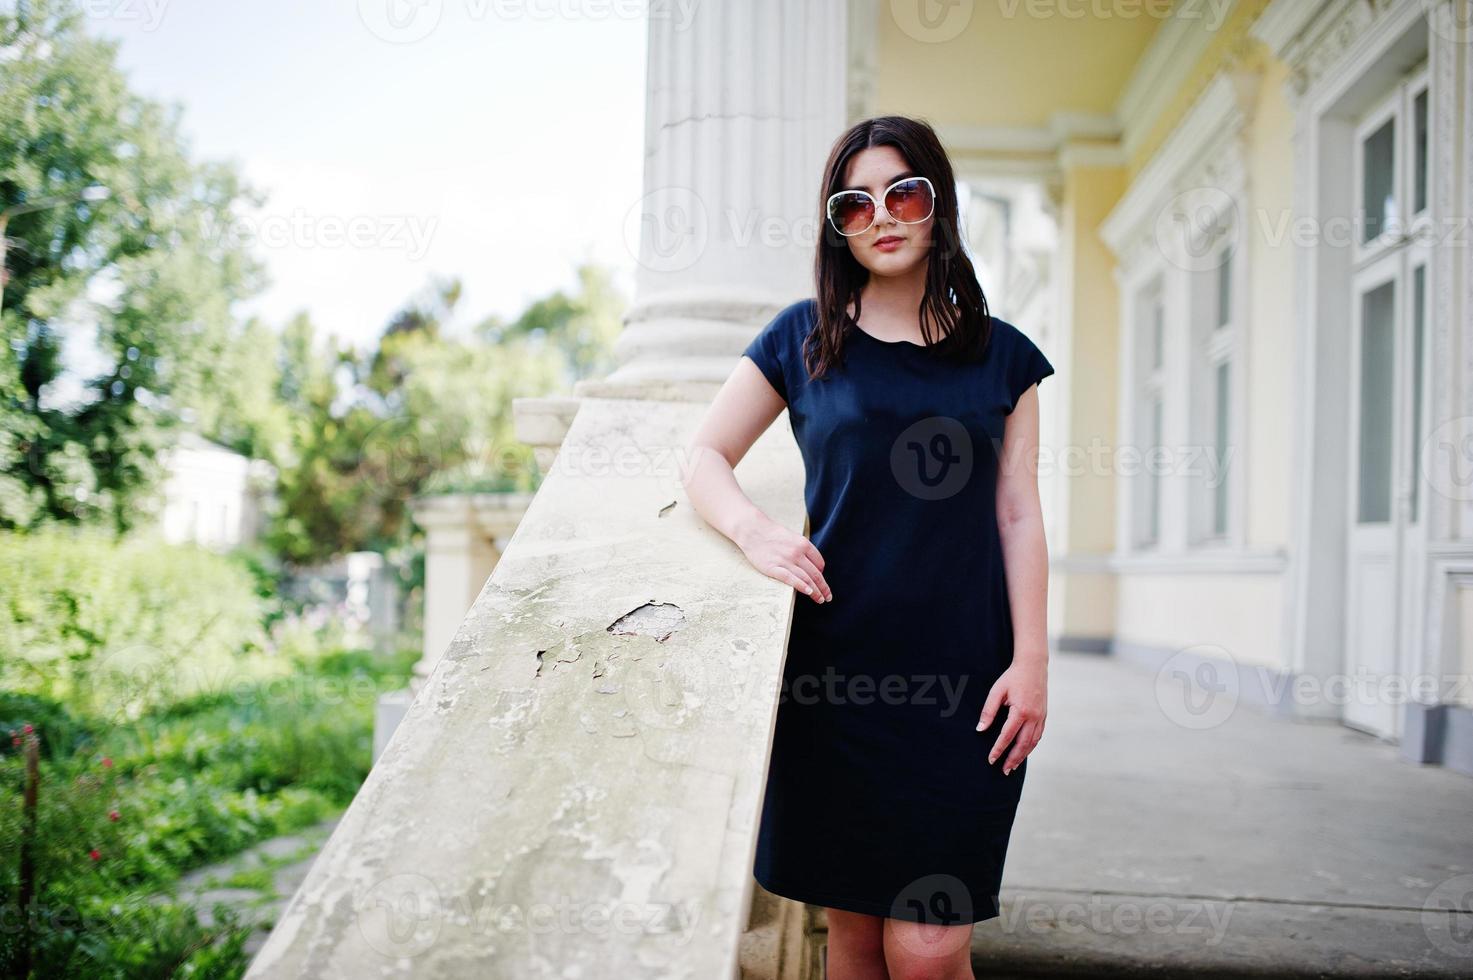 ragazza bruna in abito nero, occhiali da sole in posa contro la vecchia casa d'epoca, in una strada della città. foto